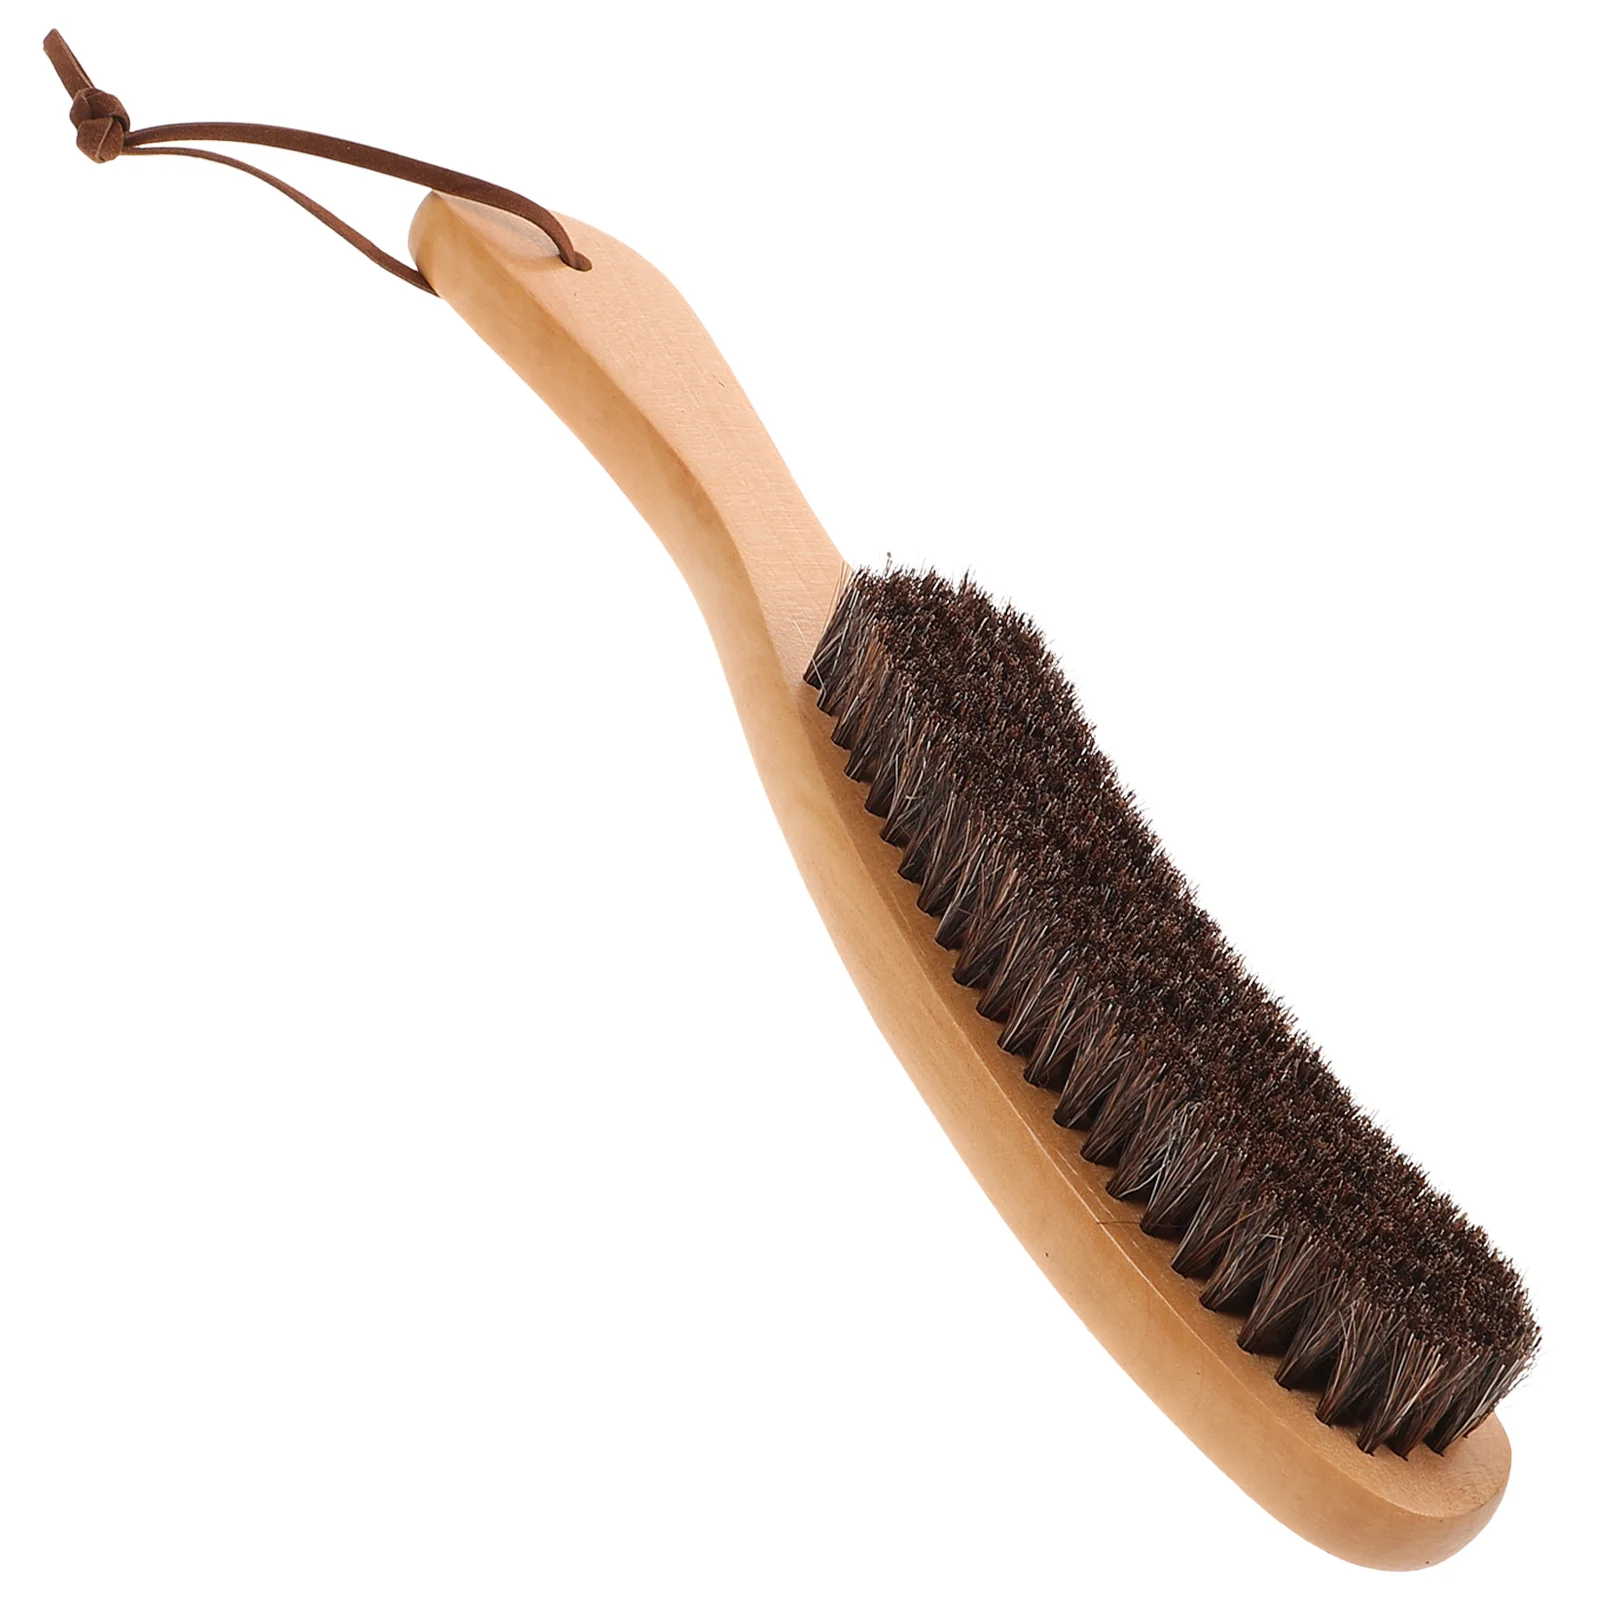 Щетка из конского волоса деревянная чистящая щетка: обувь из конского волоса, блестящая искусственная щетина для ухода за обувью